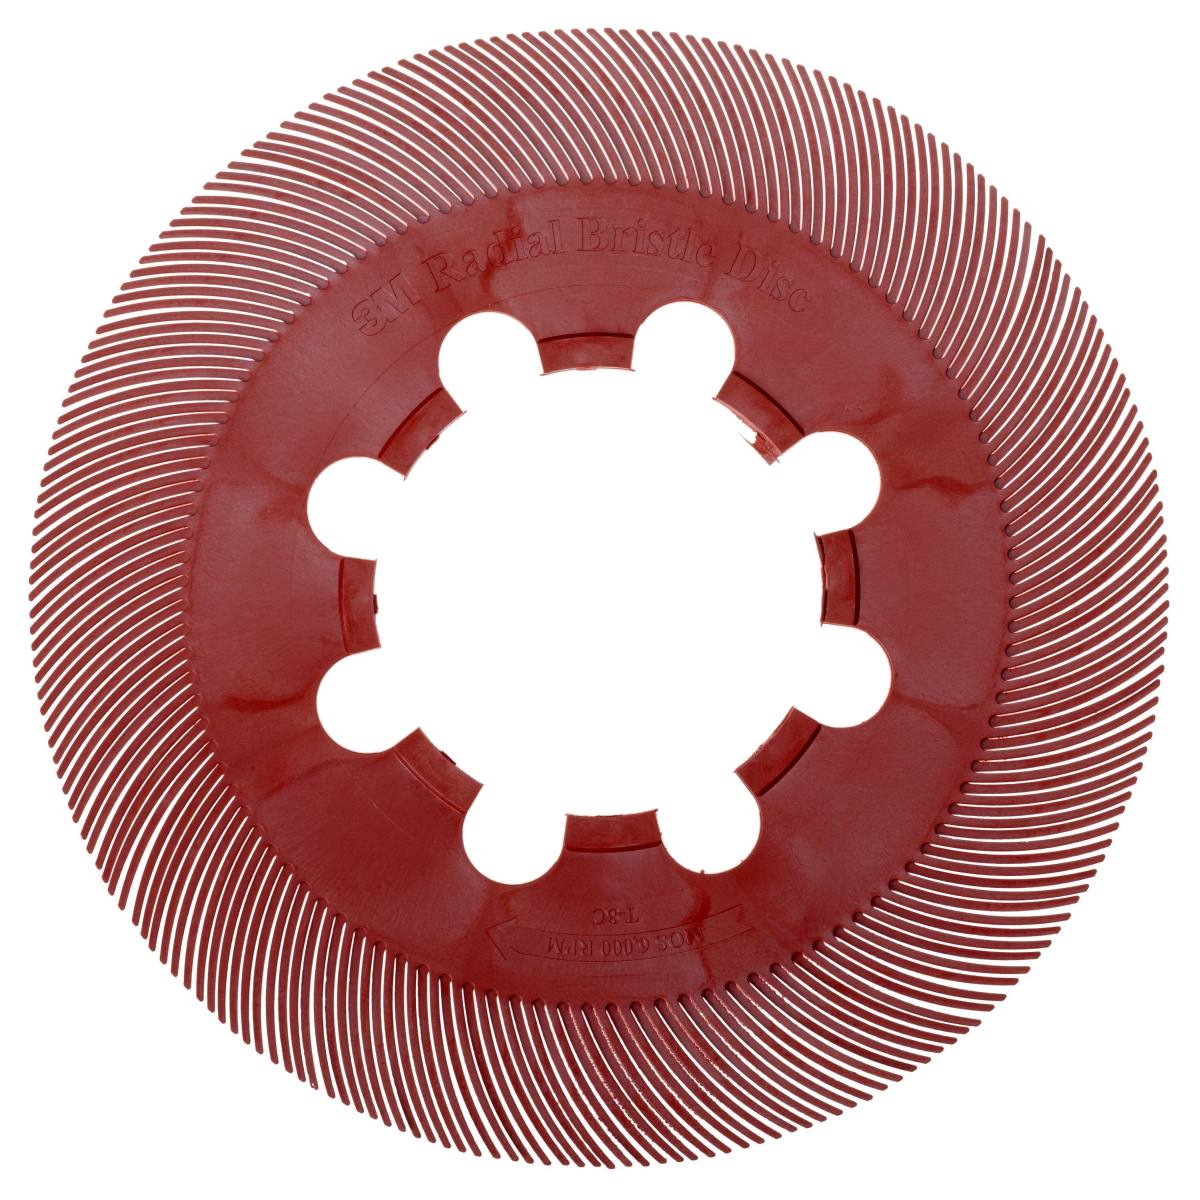 3M Scotch-Brite radiale a segmenti singoli BB-ZB, rosso, 152,4 mm, P220, tipo C #33057